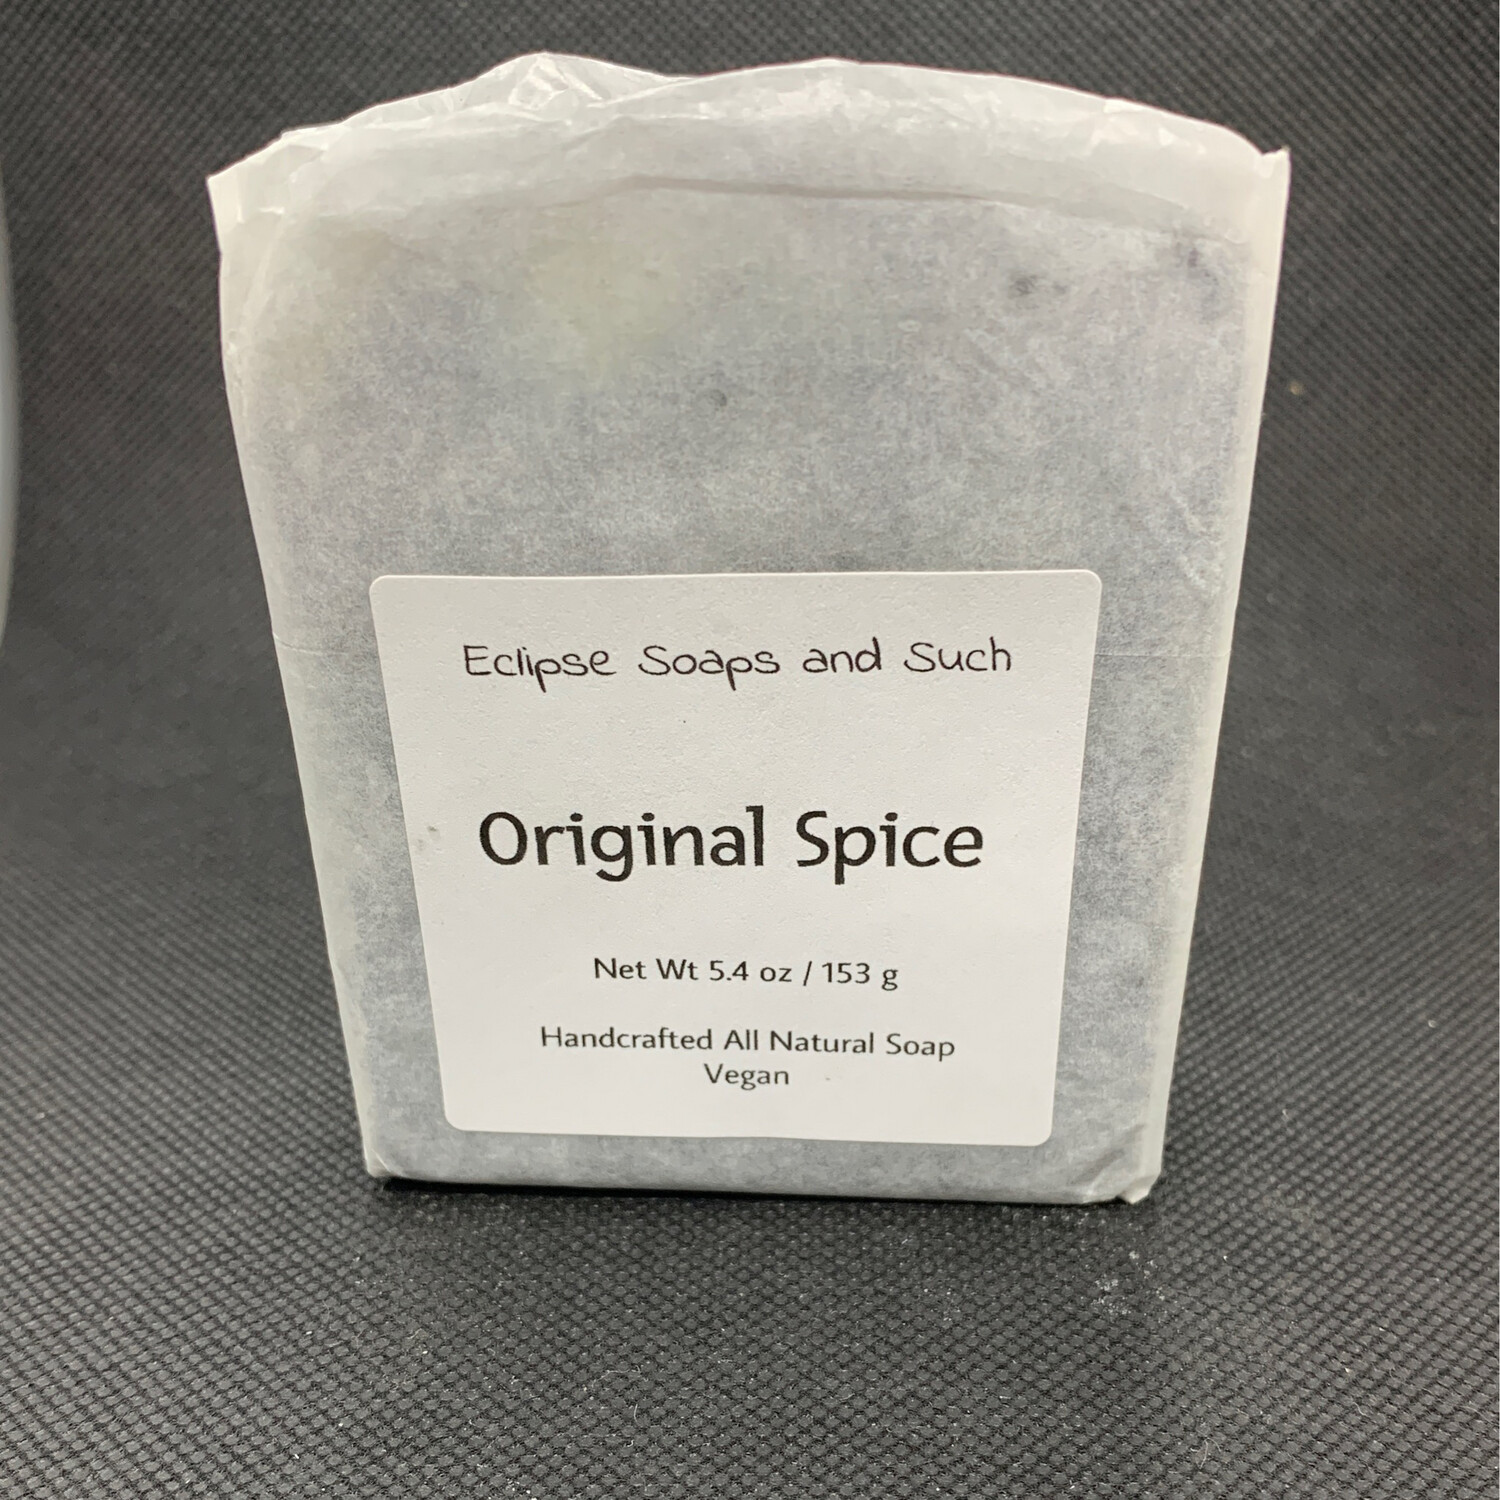 Original Spice Soap